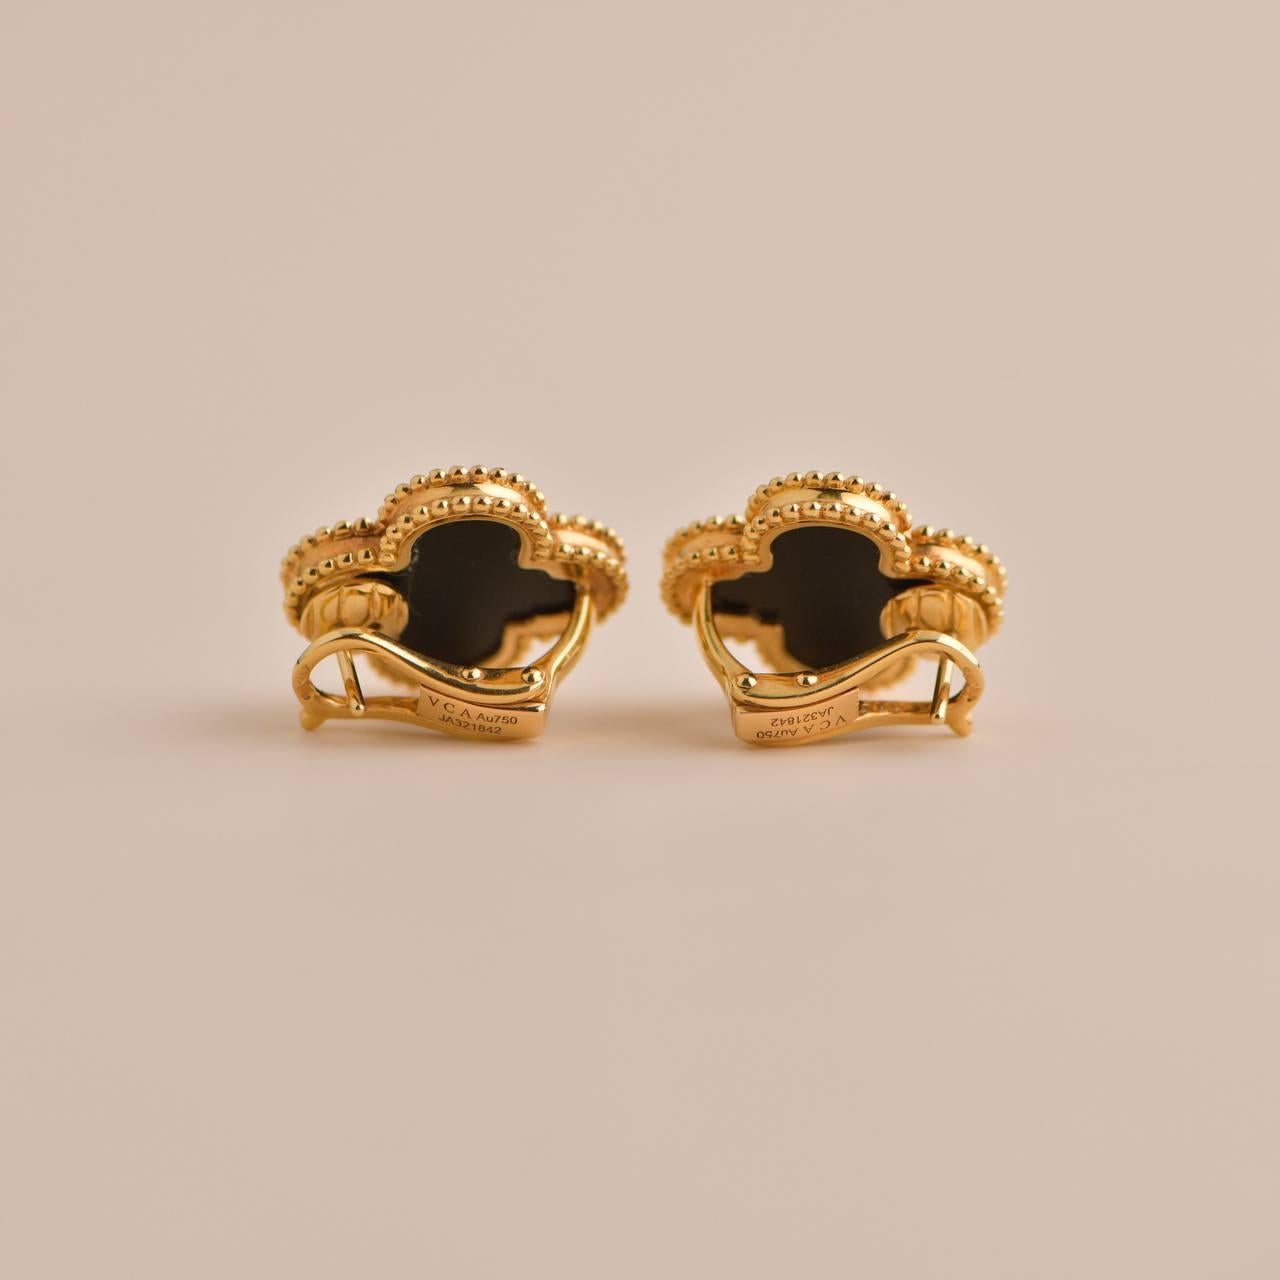 Uncut Van Cleef & Arpels Magic Alhambra Black Onyx Yellow Gold Earrings